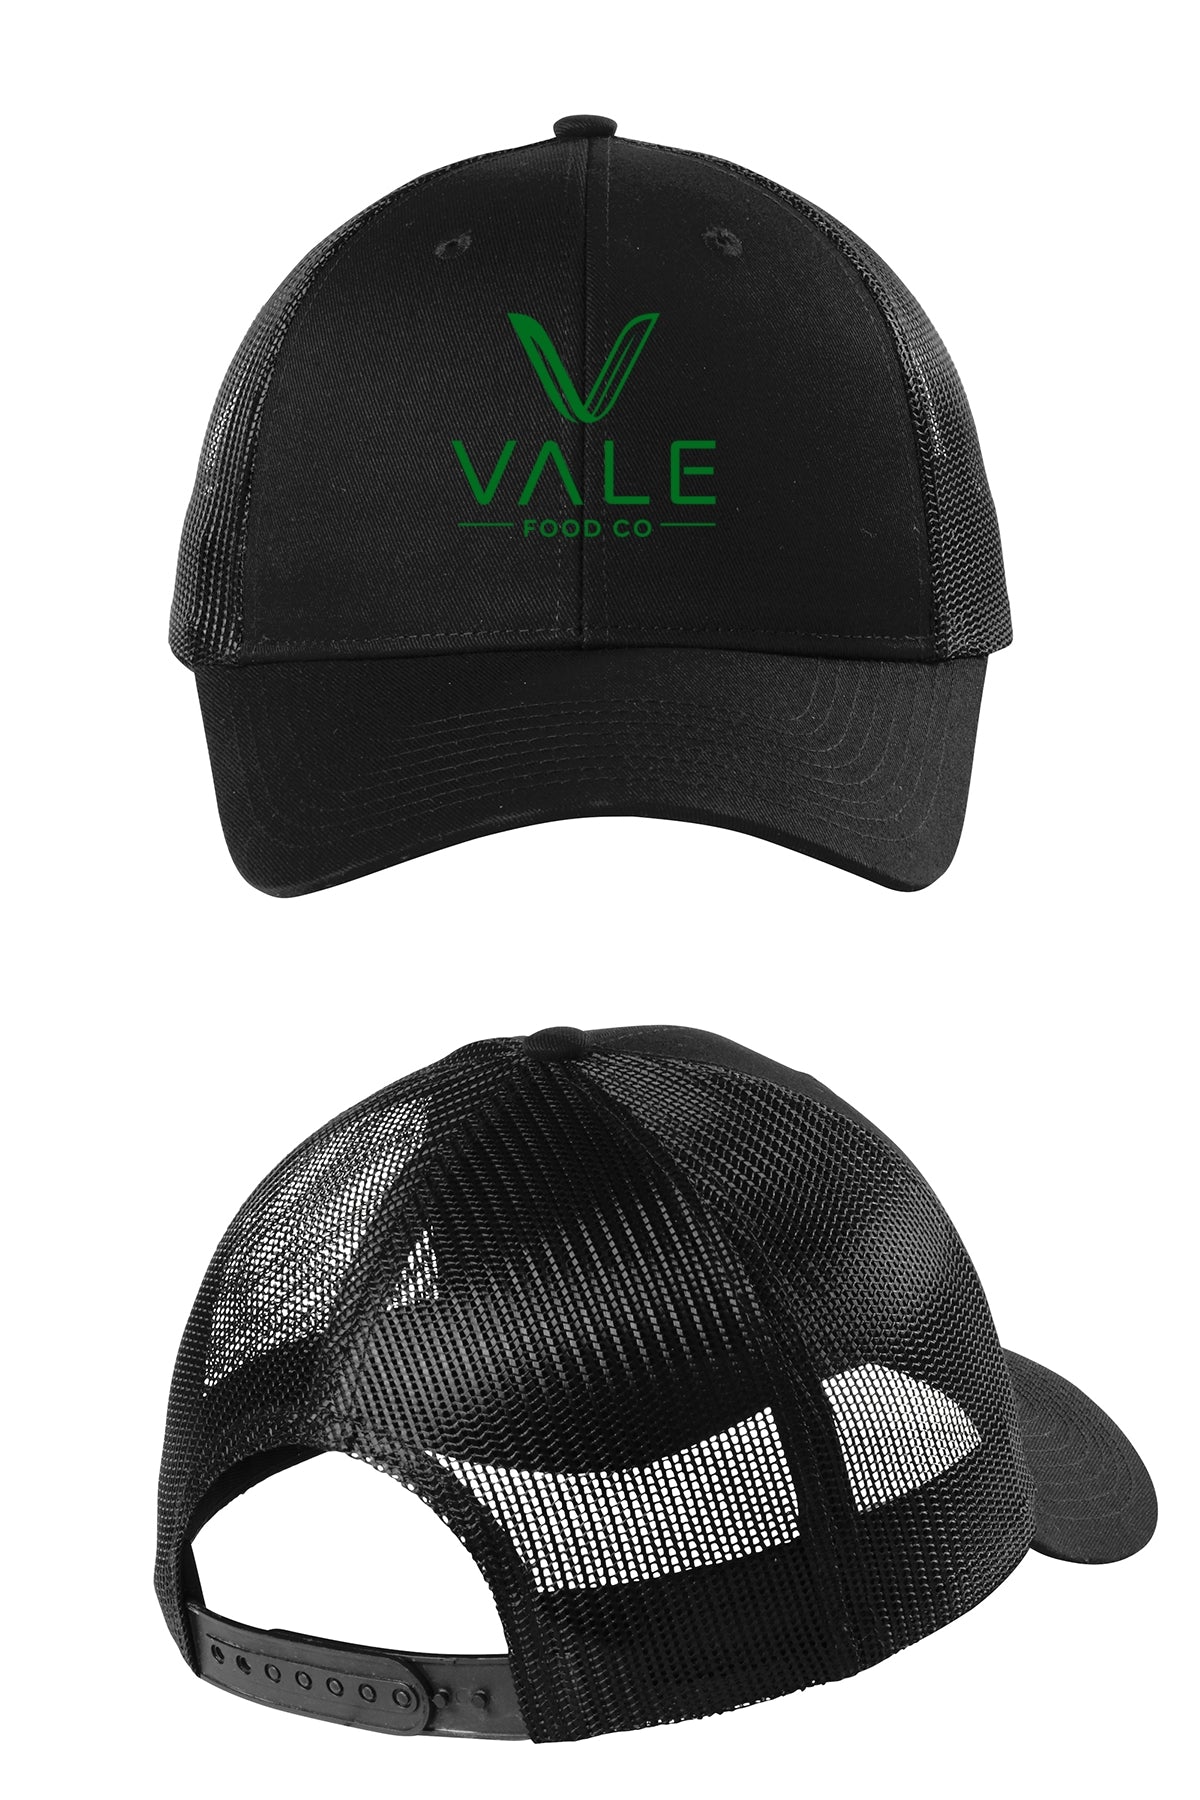 Vale Trucker Cap